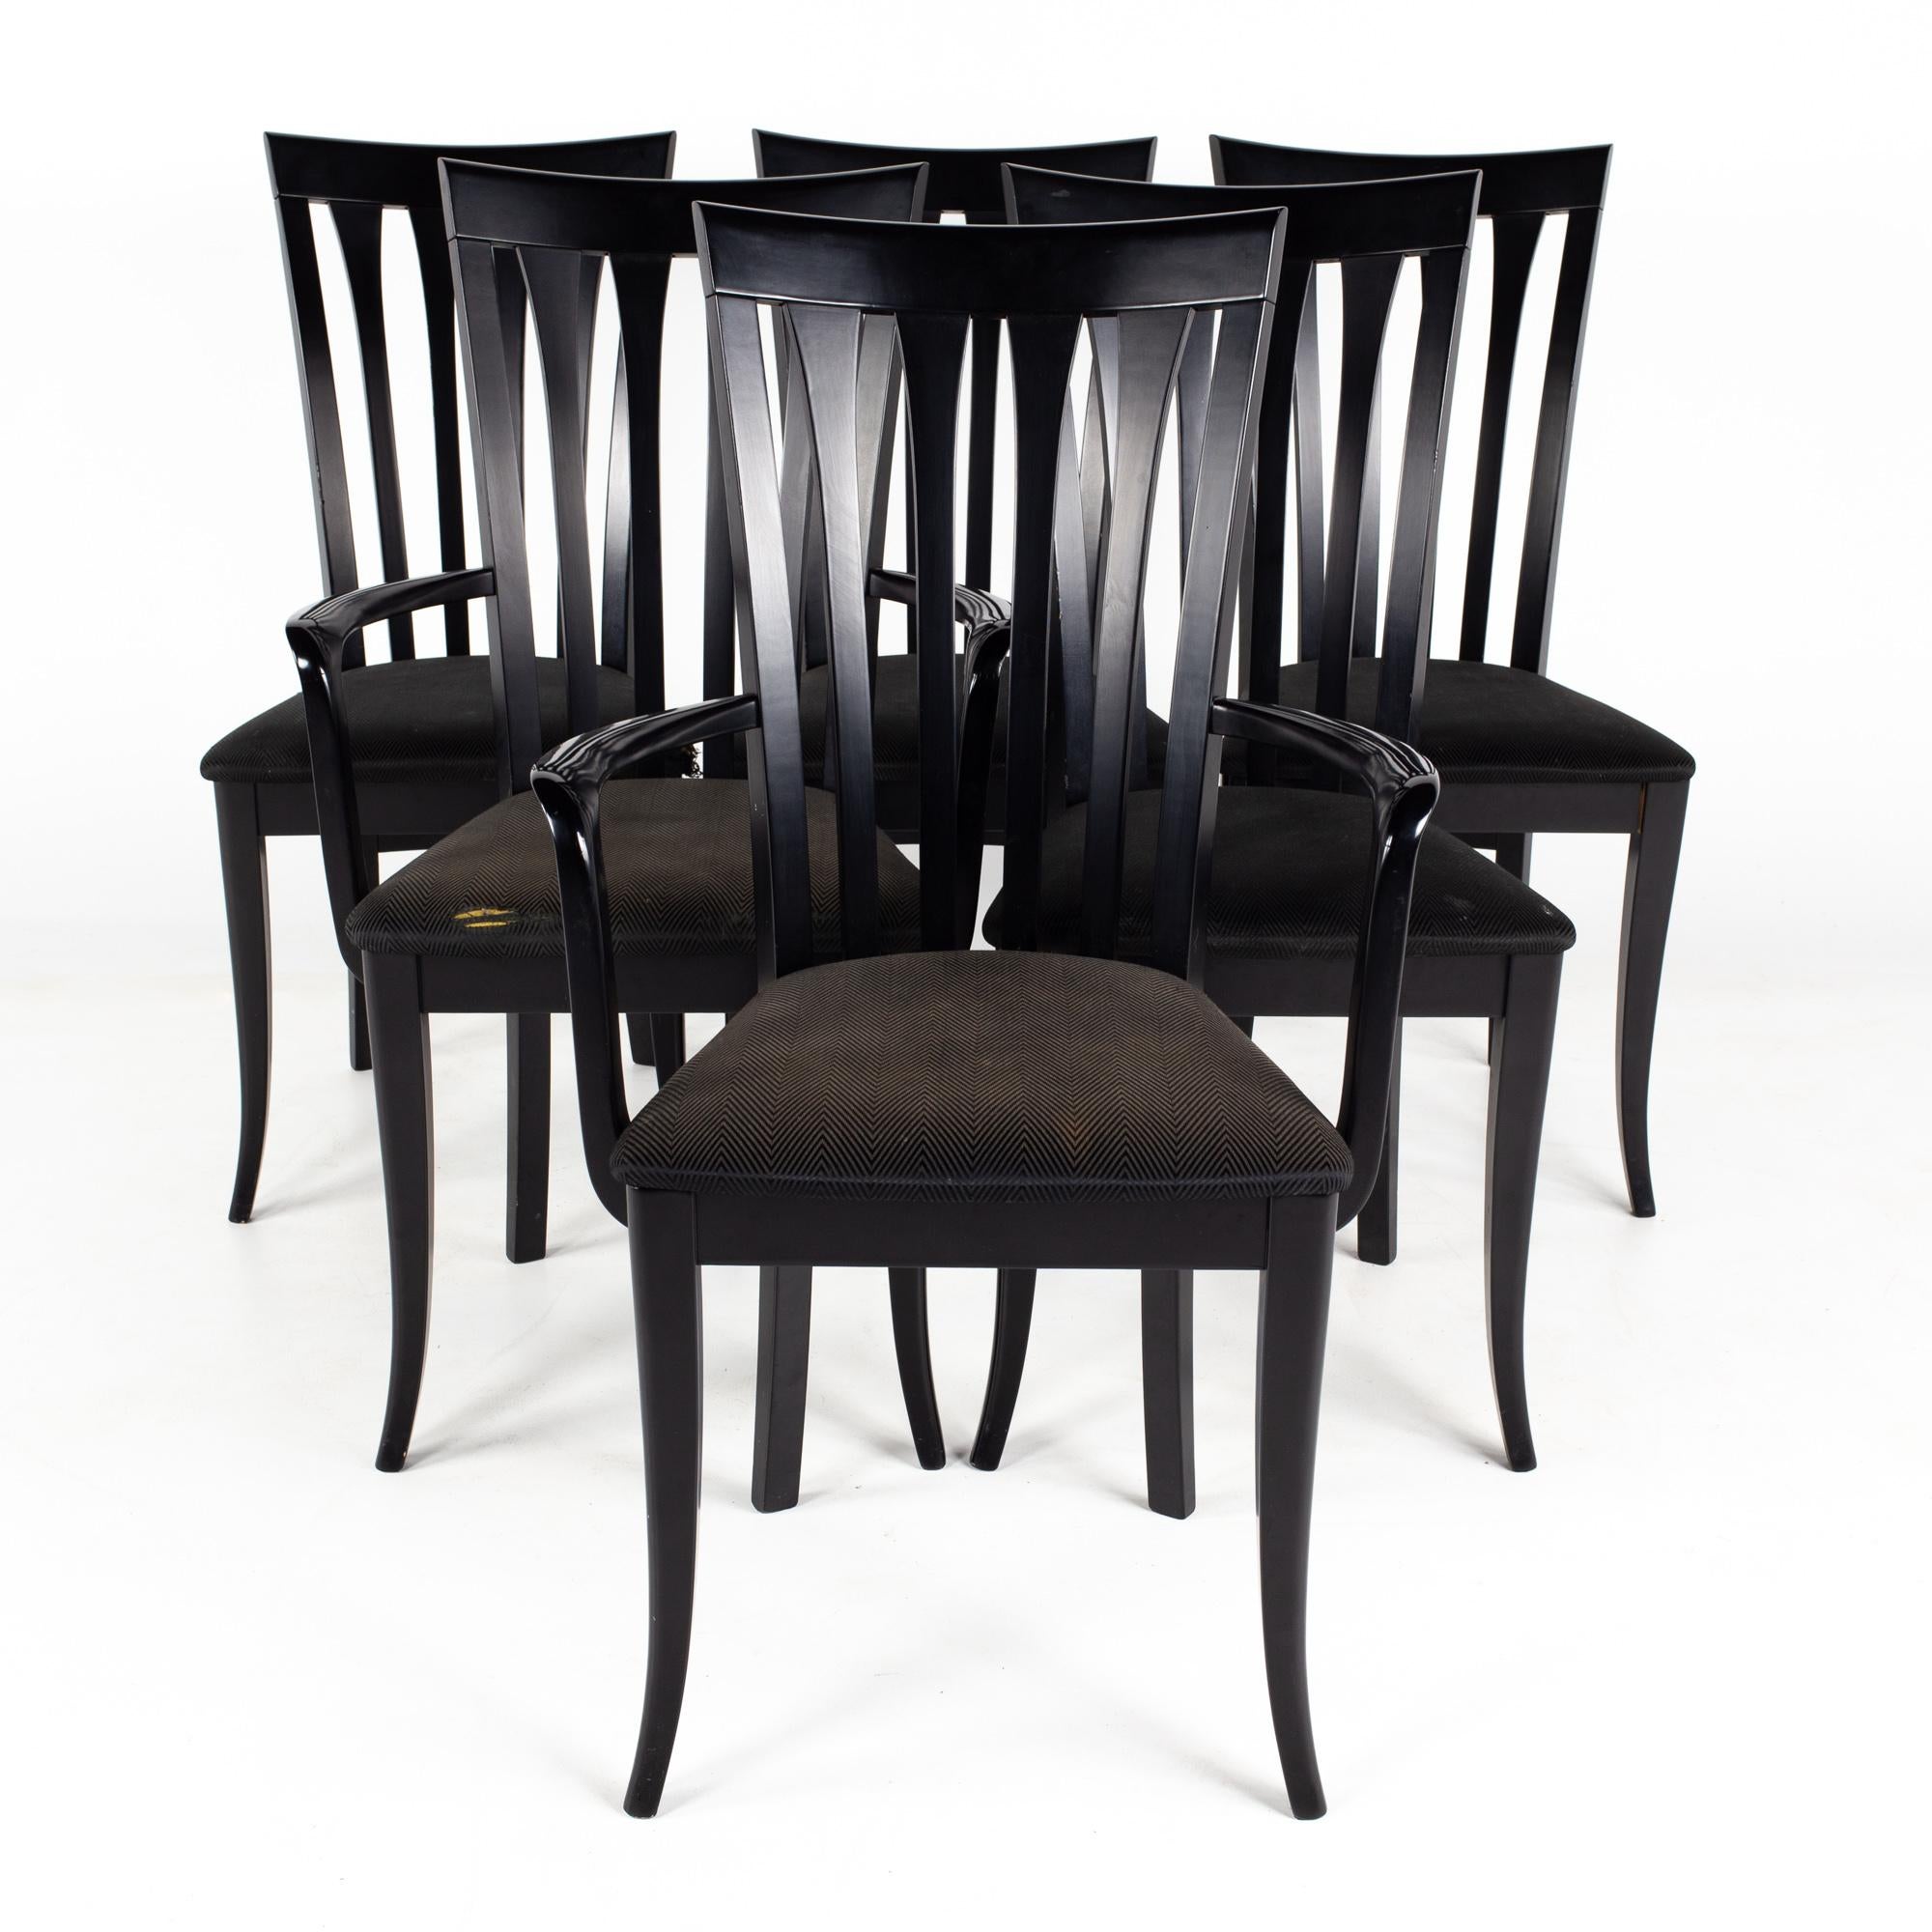 Chaises de salle à manger italiennes Sibau à haut dossier noir - Lot de 6

Chaque chaise mesure : 18,5 de large x 20,5 de profond x 38,5 de haut, avec une hauteur d'assise de 18 et une hauteur d'accoudoir de 26,5 pouces.

À propos des photos : Nous